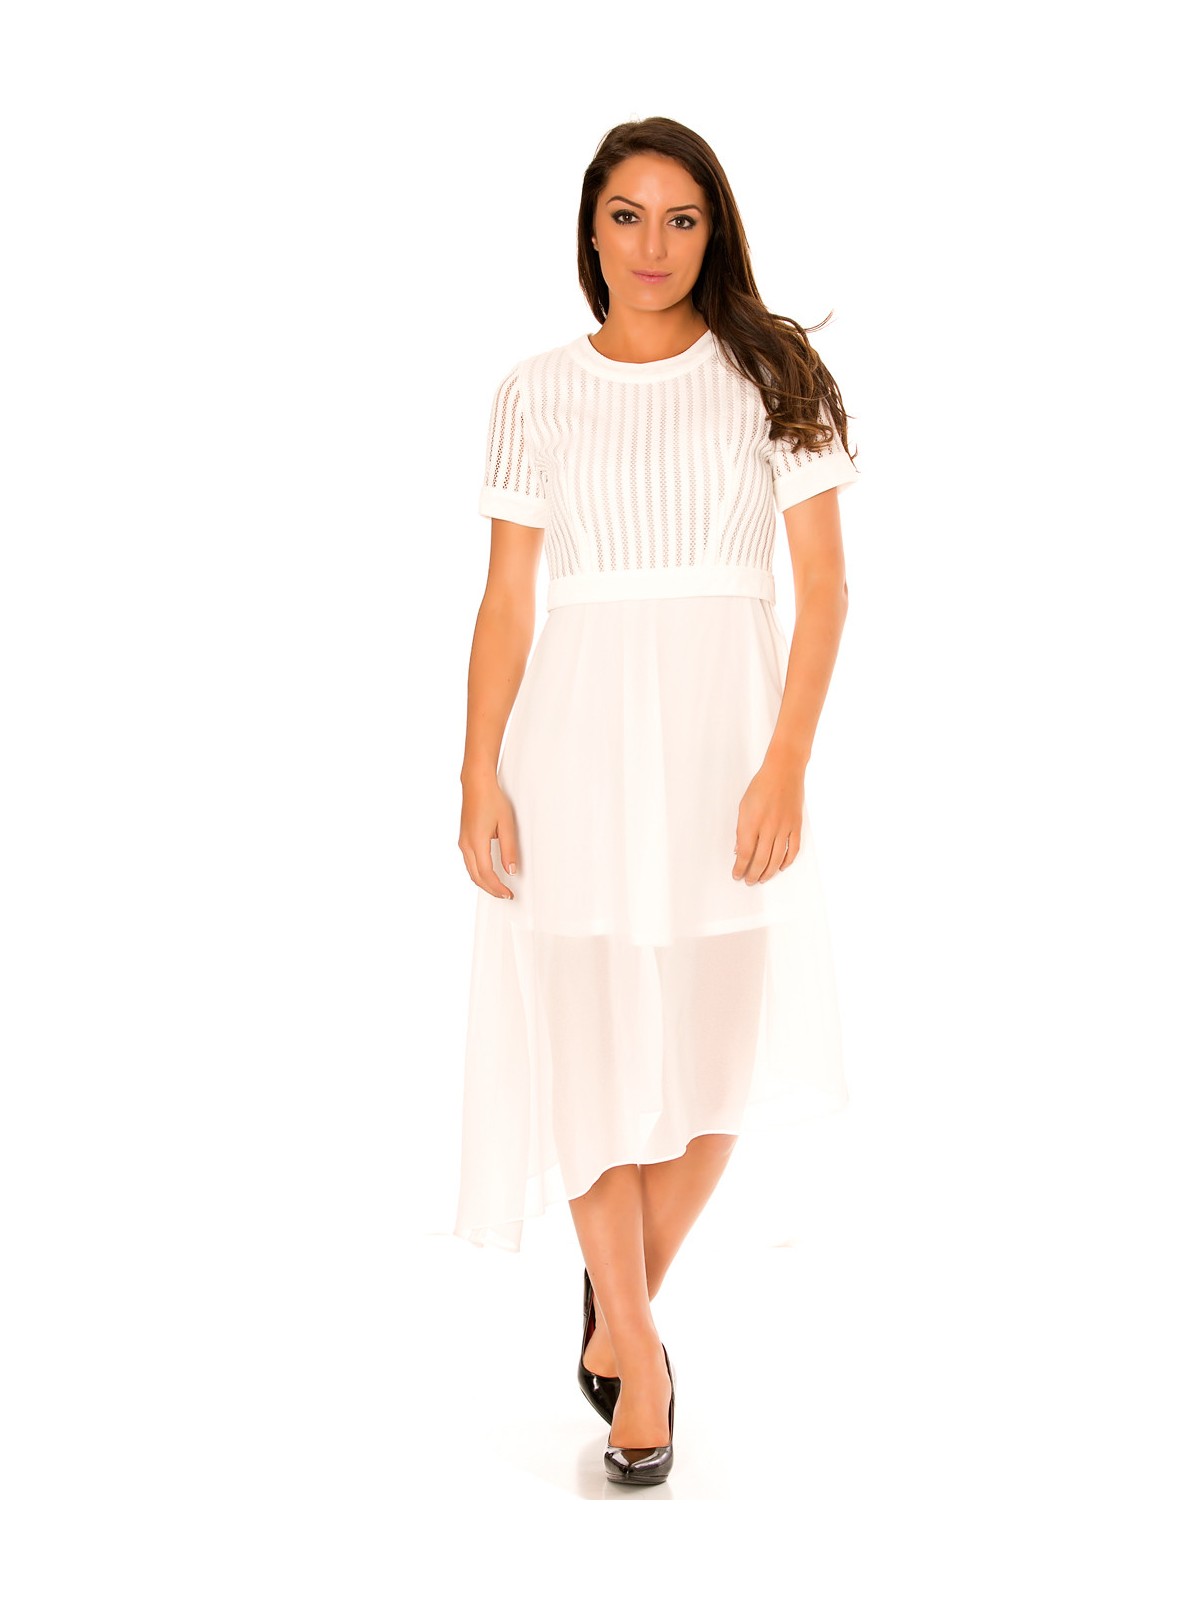 Robe blanche asymétrique et bi matière. Haut à trou et jupe en voilage. F6281 - 1